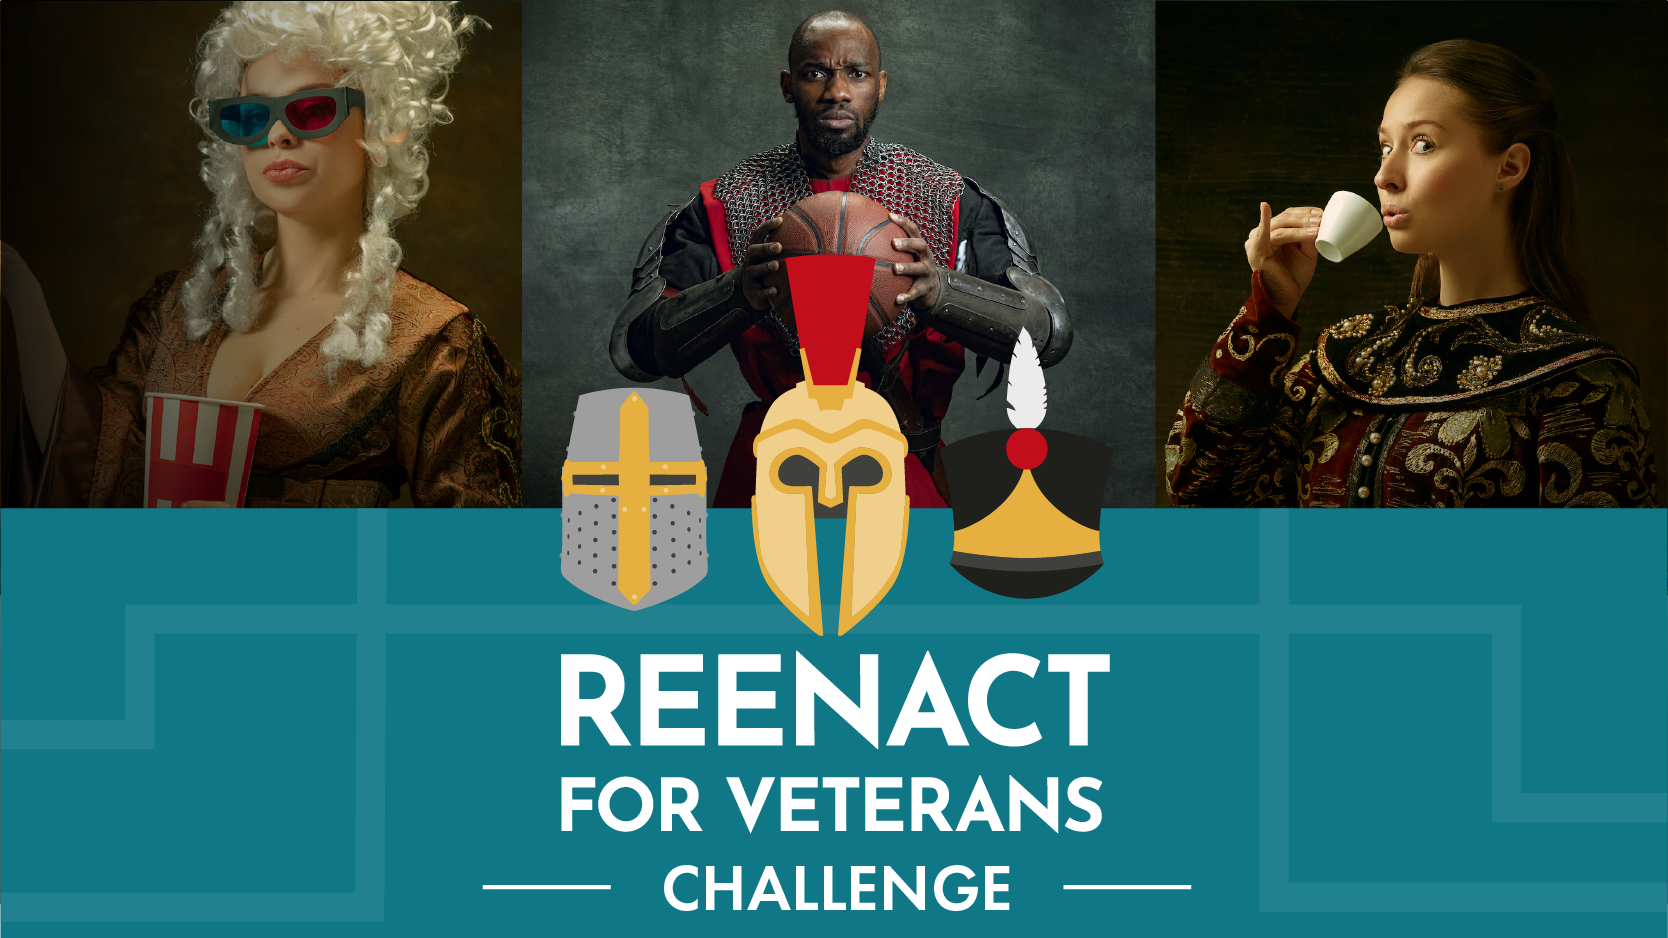 Reenact for Veterans Challenge